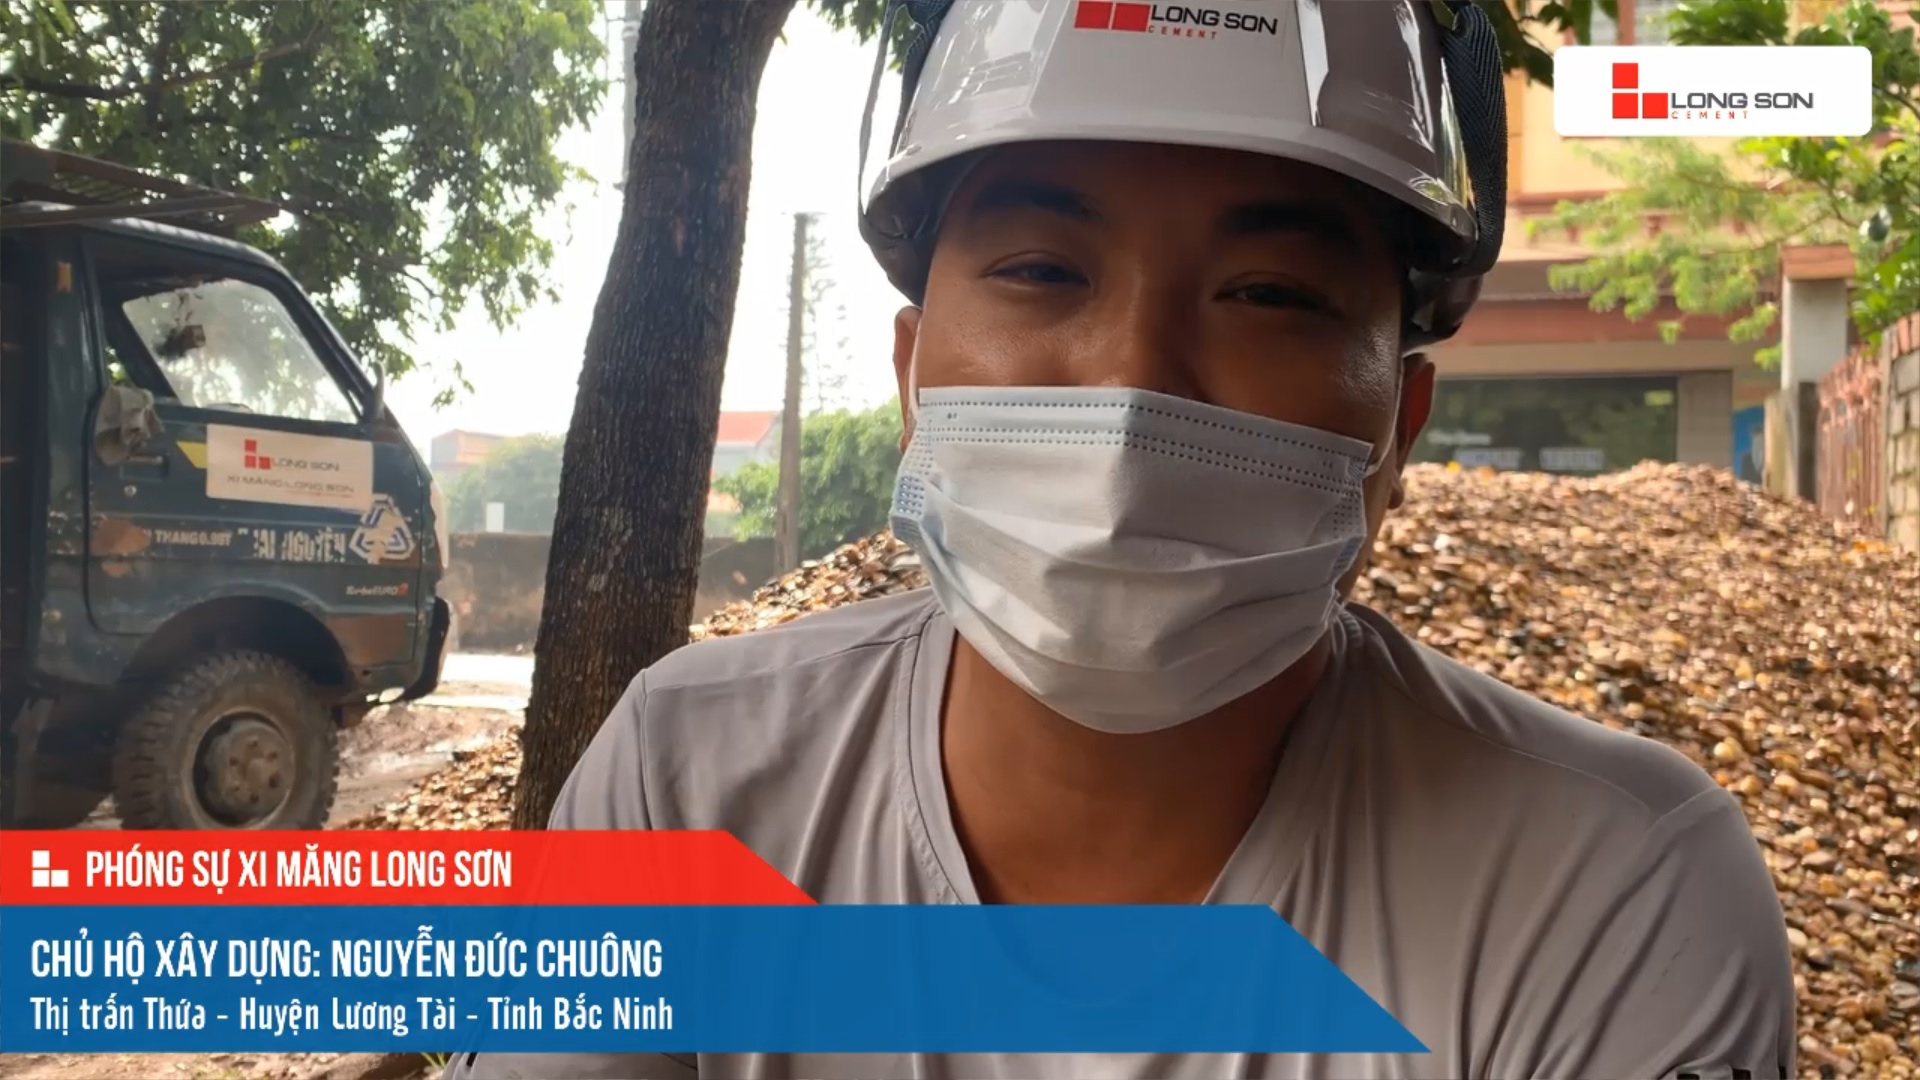 Phóng sự công trình sử dụng xi măng Long Sơn tại Bắc Ninh ngày 27/09/2021